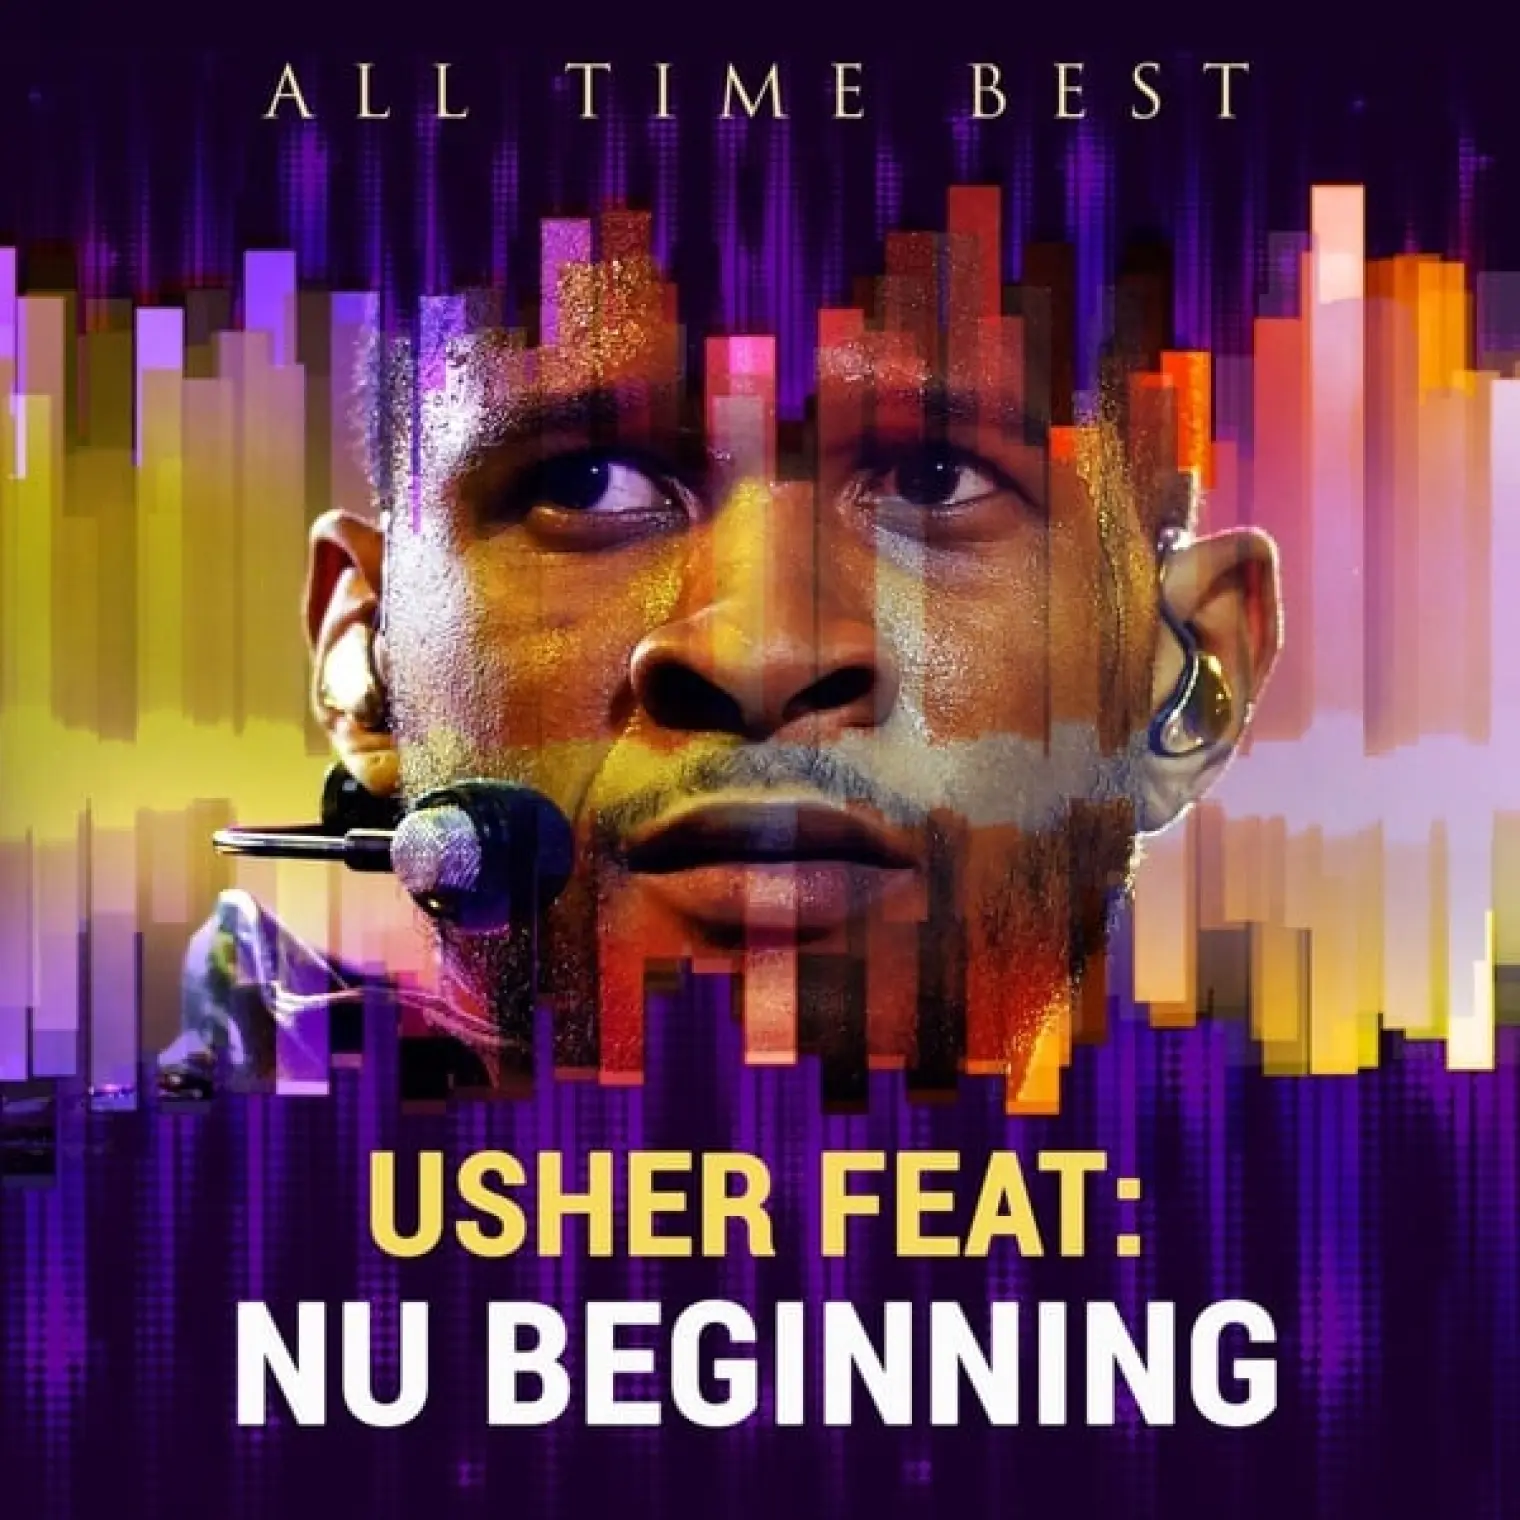 All Time Best: Usher -  Usher 